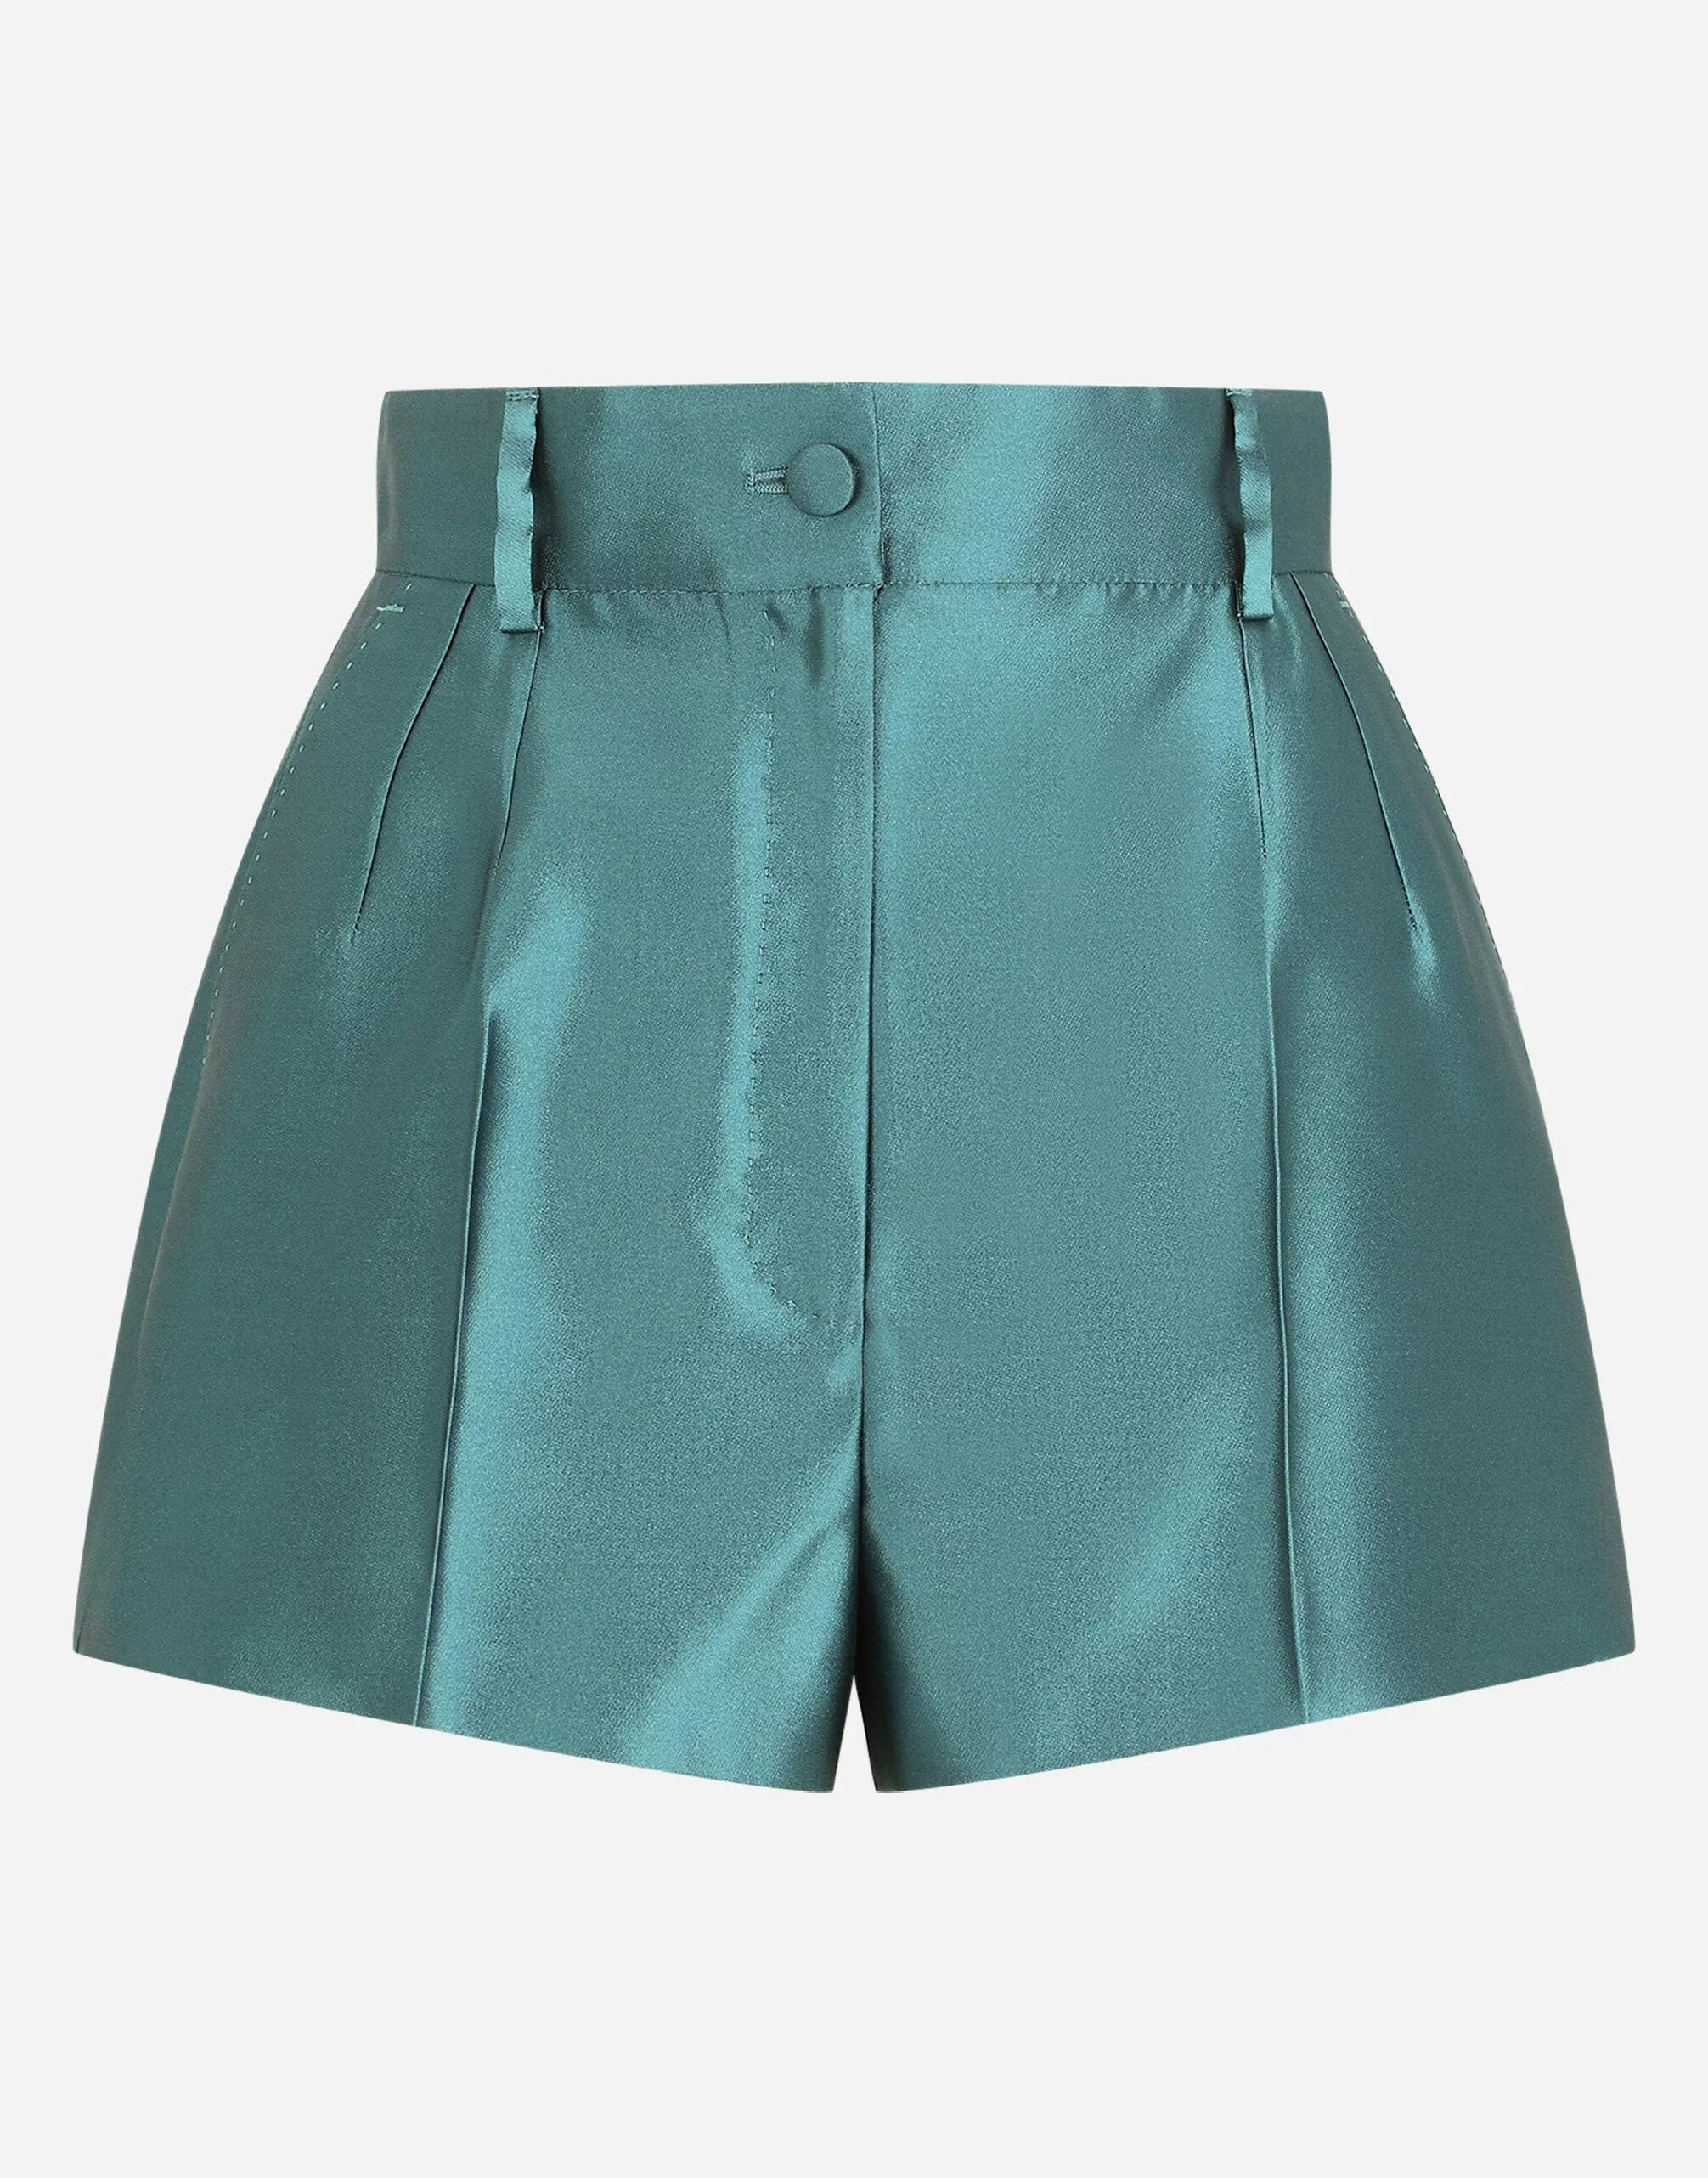 Dolce & Gabbana Mikado Silk Shorts